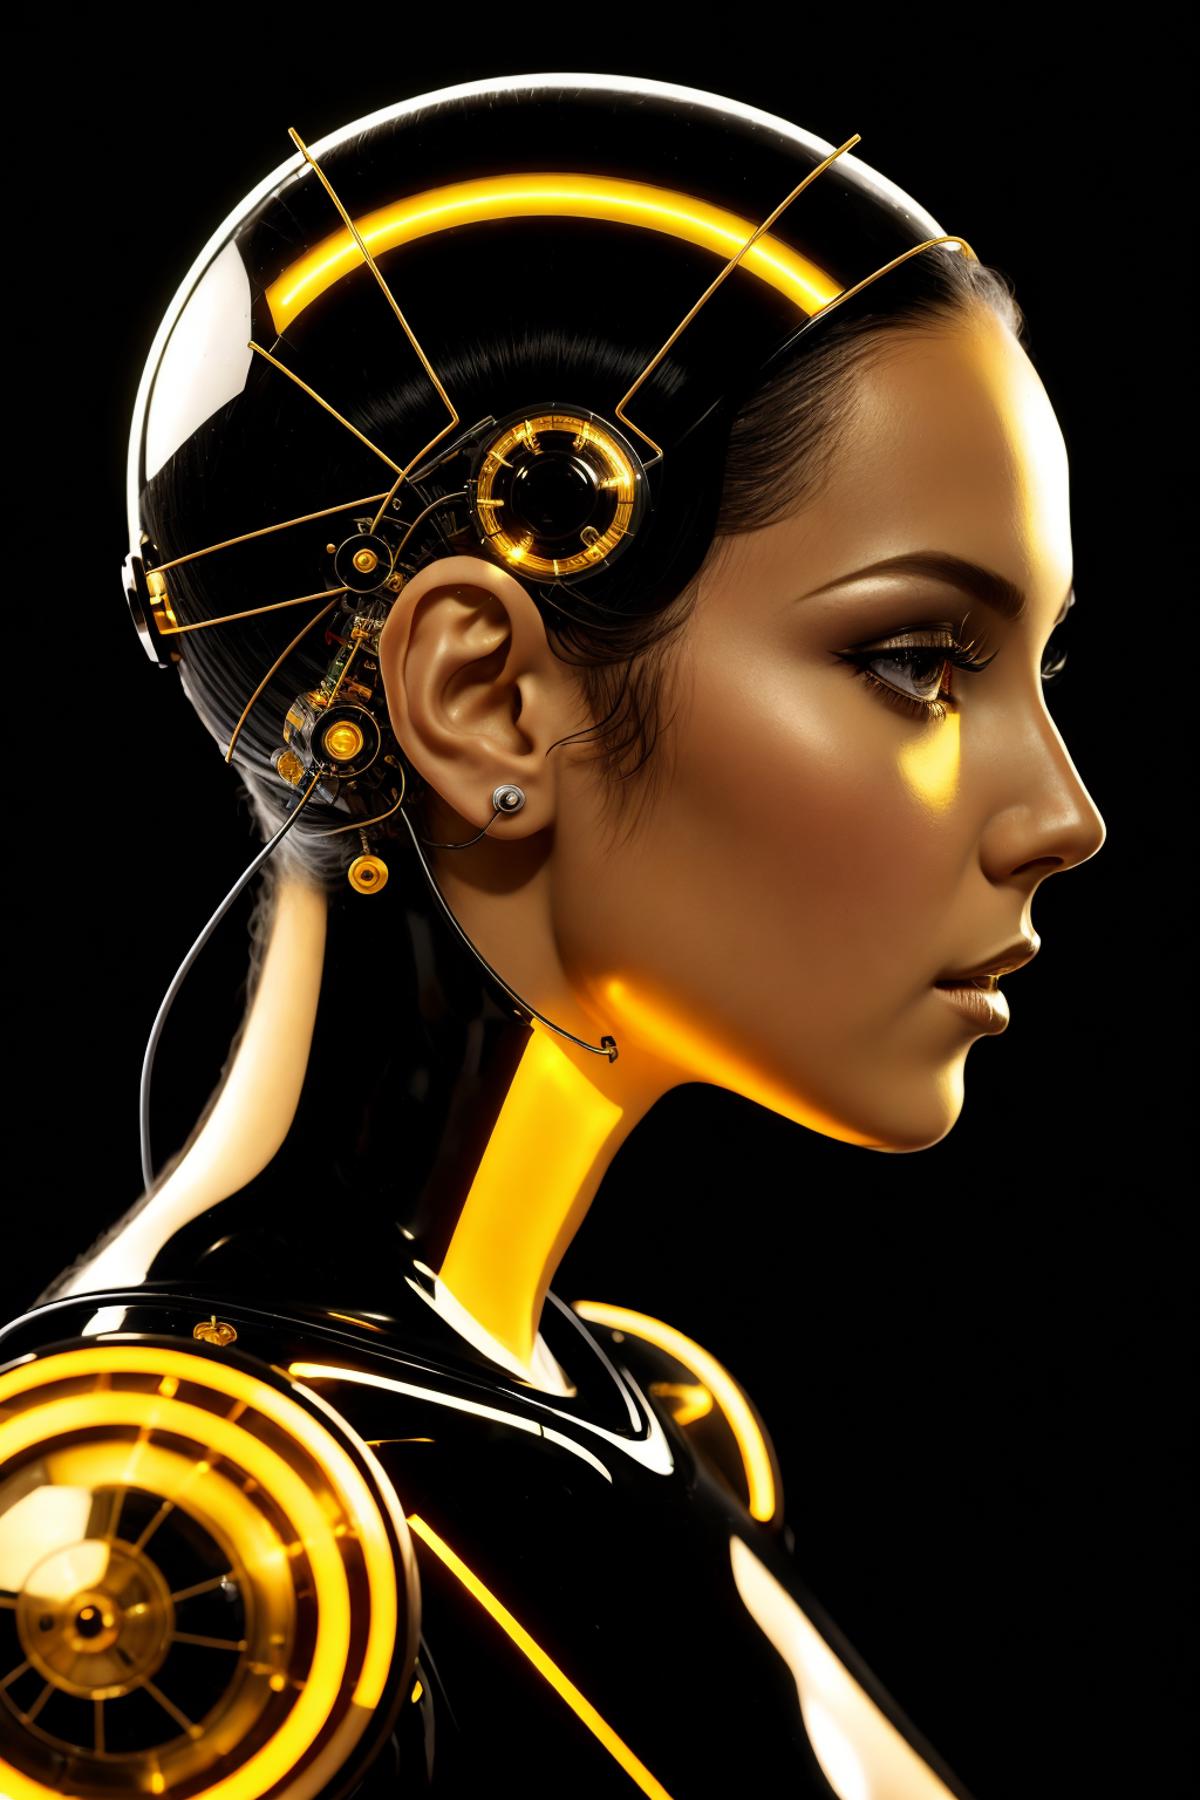 AI model image by DeViLDoNia